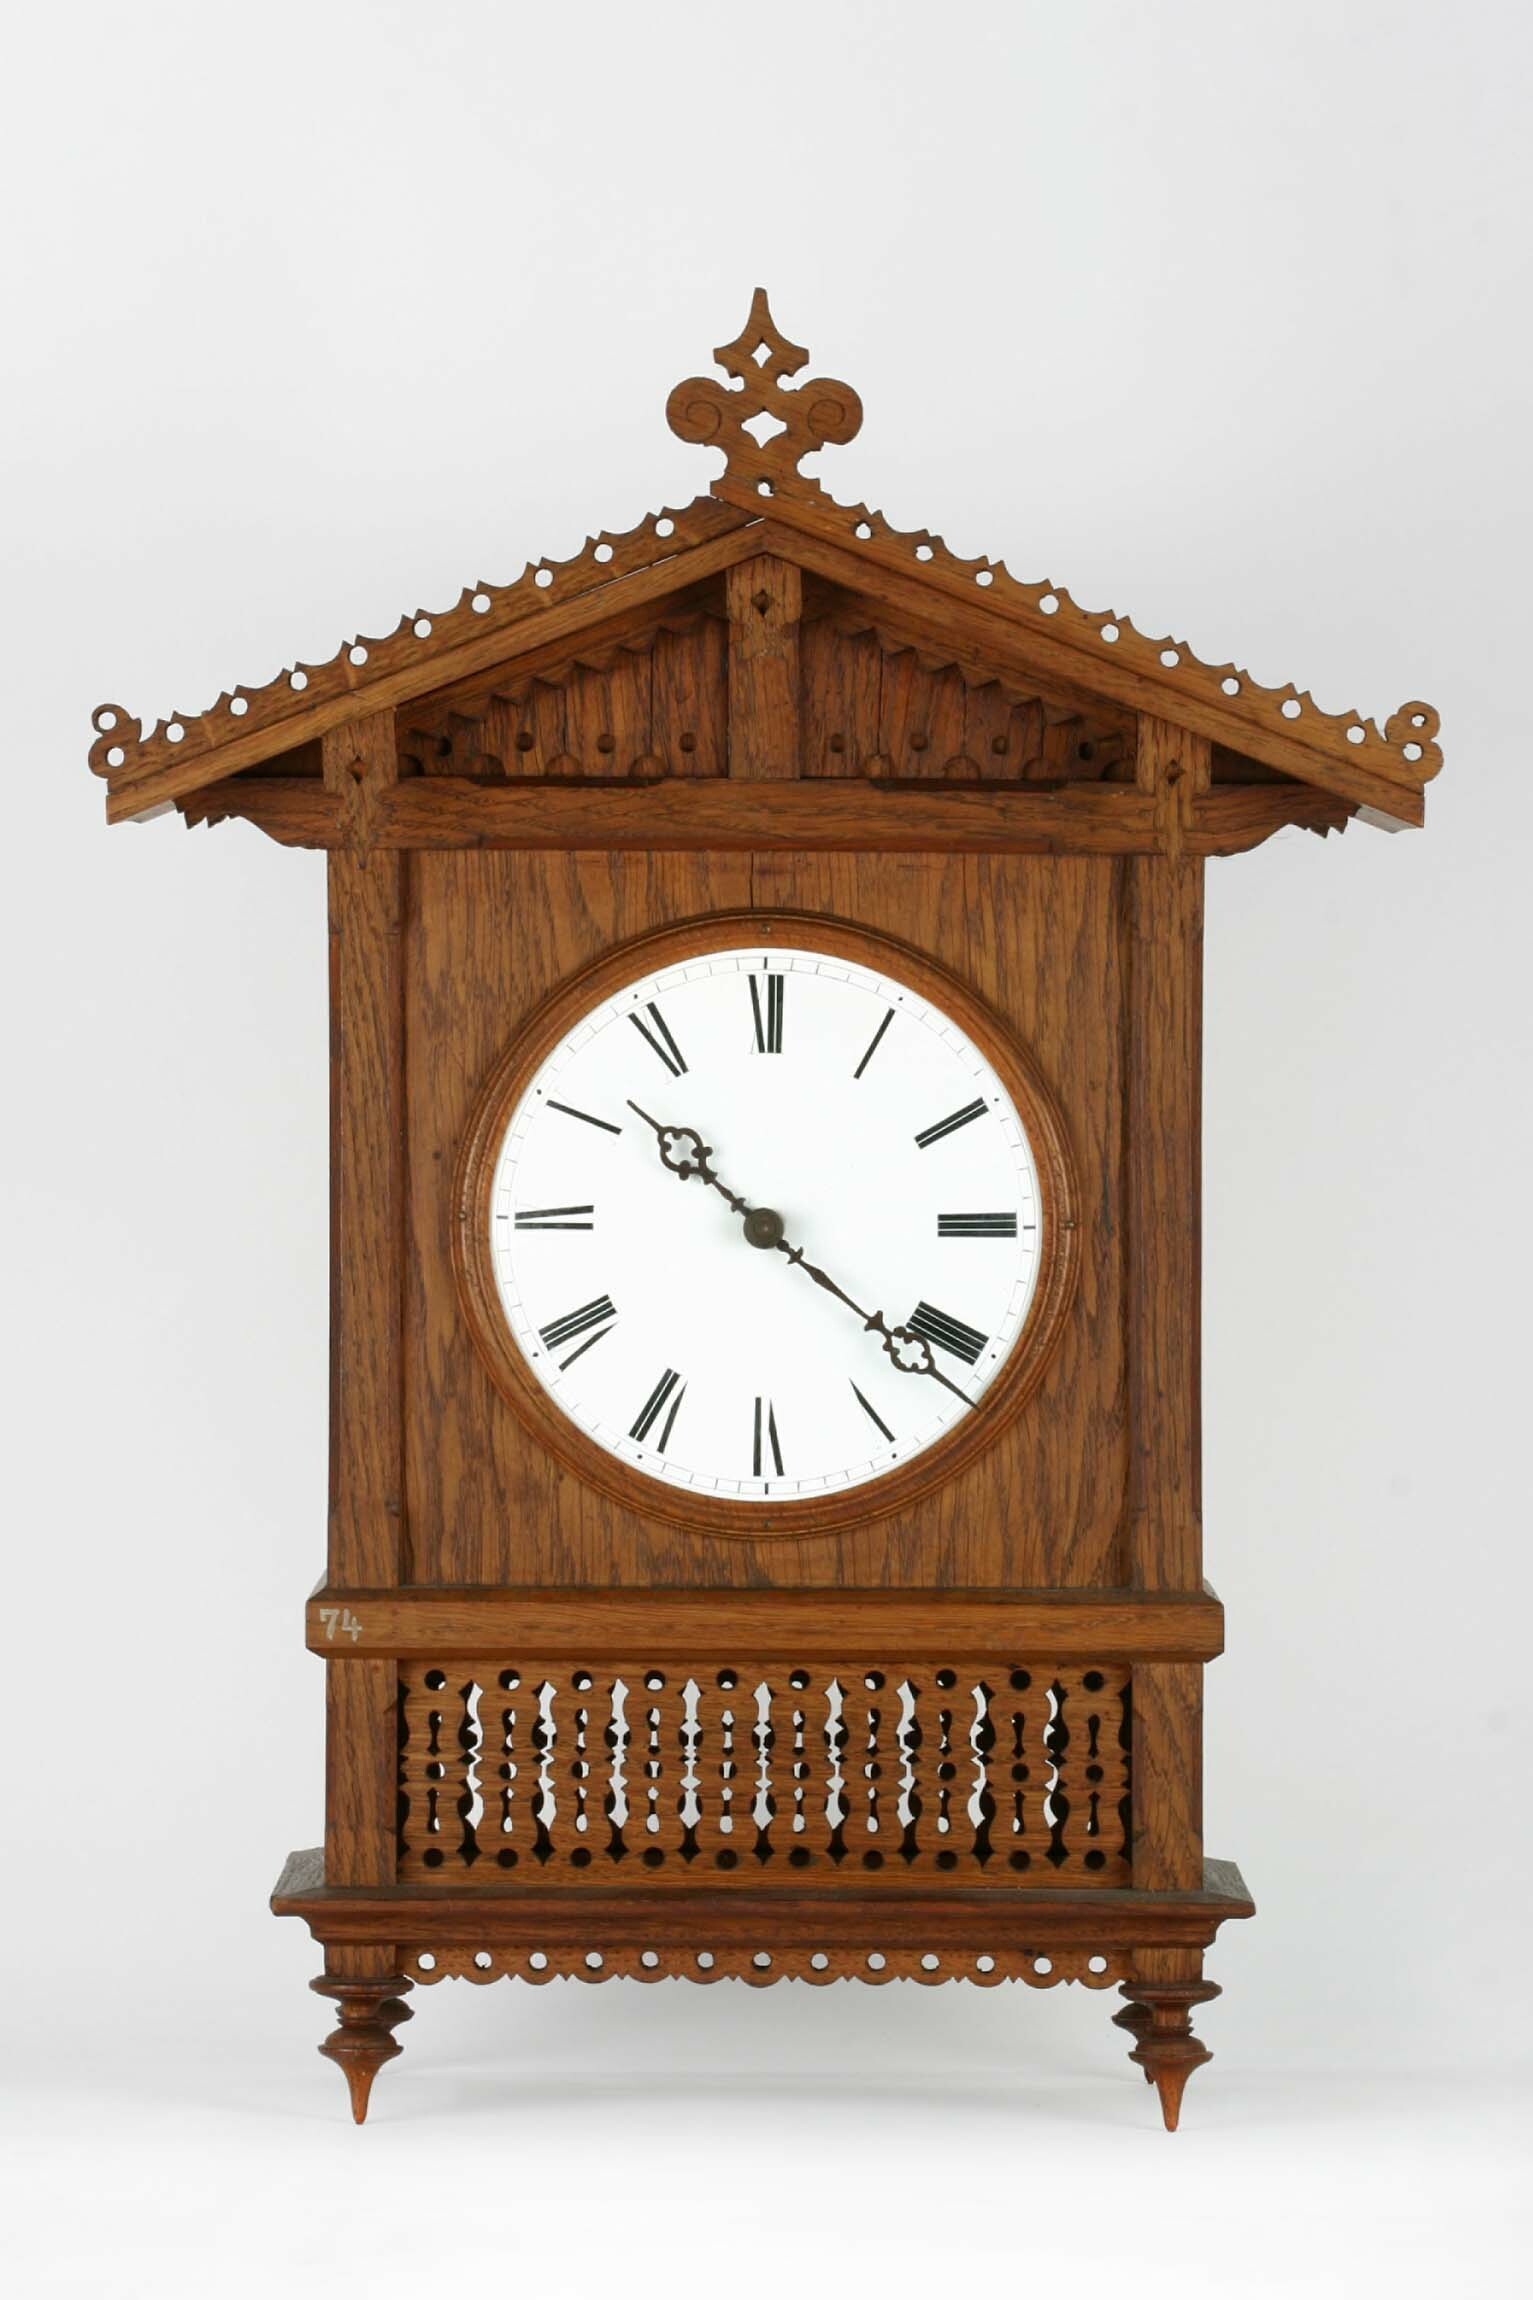 Bahnhäusleuhr, Uhrmacherschule Furtwangen, 1861 (Deutsches Uhrenmuseum CC BY-SA)